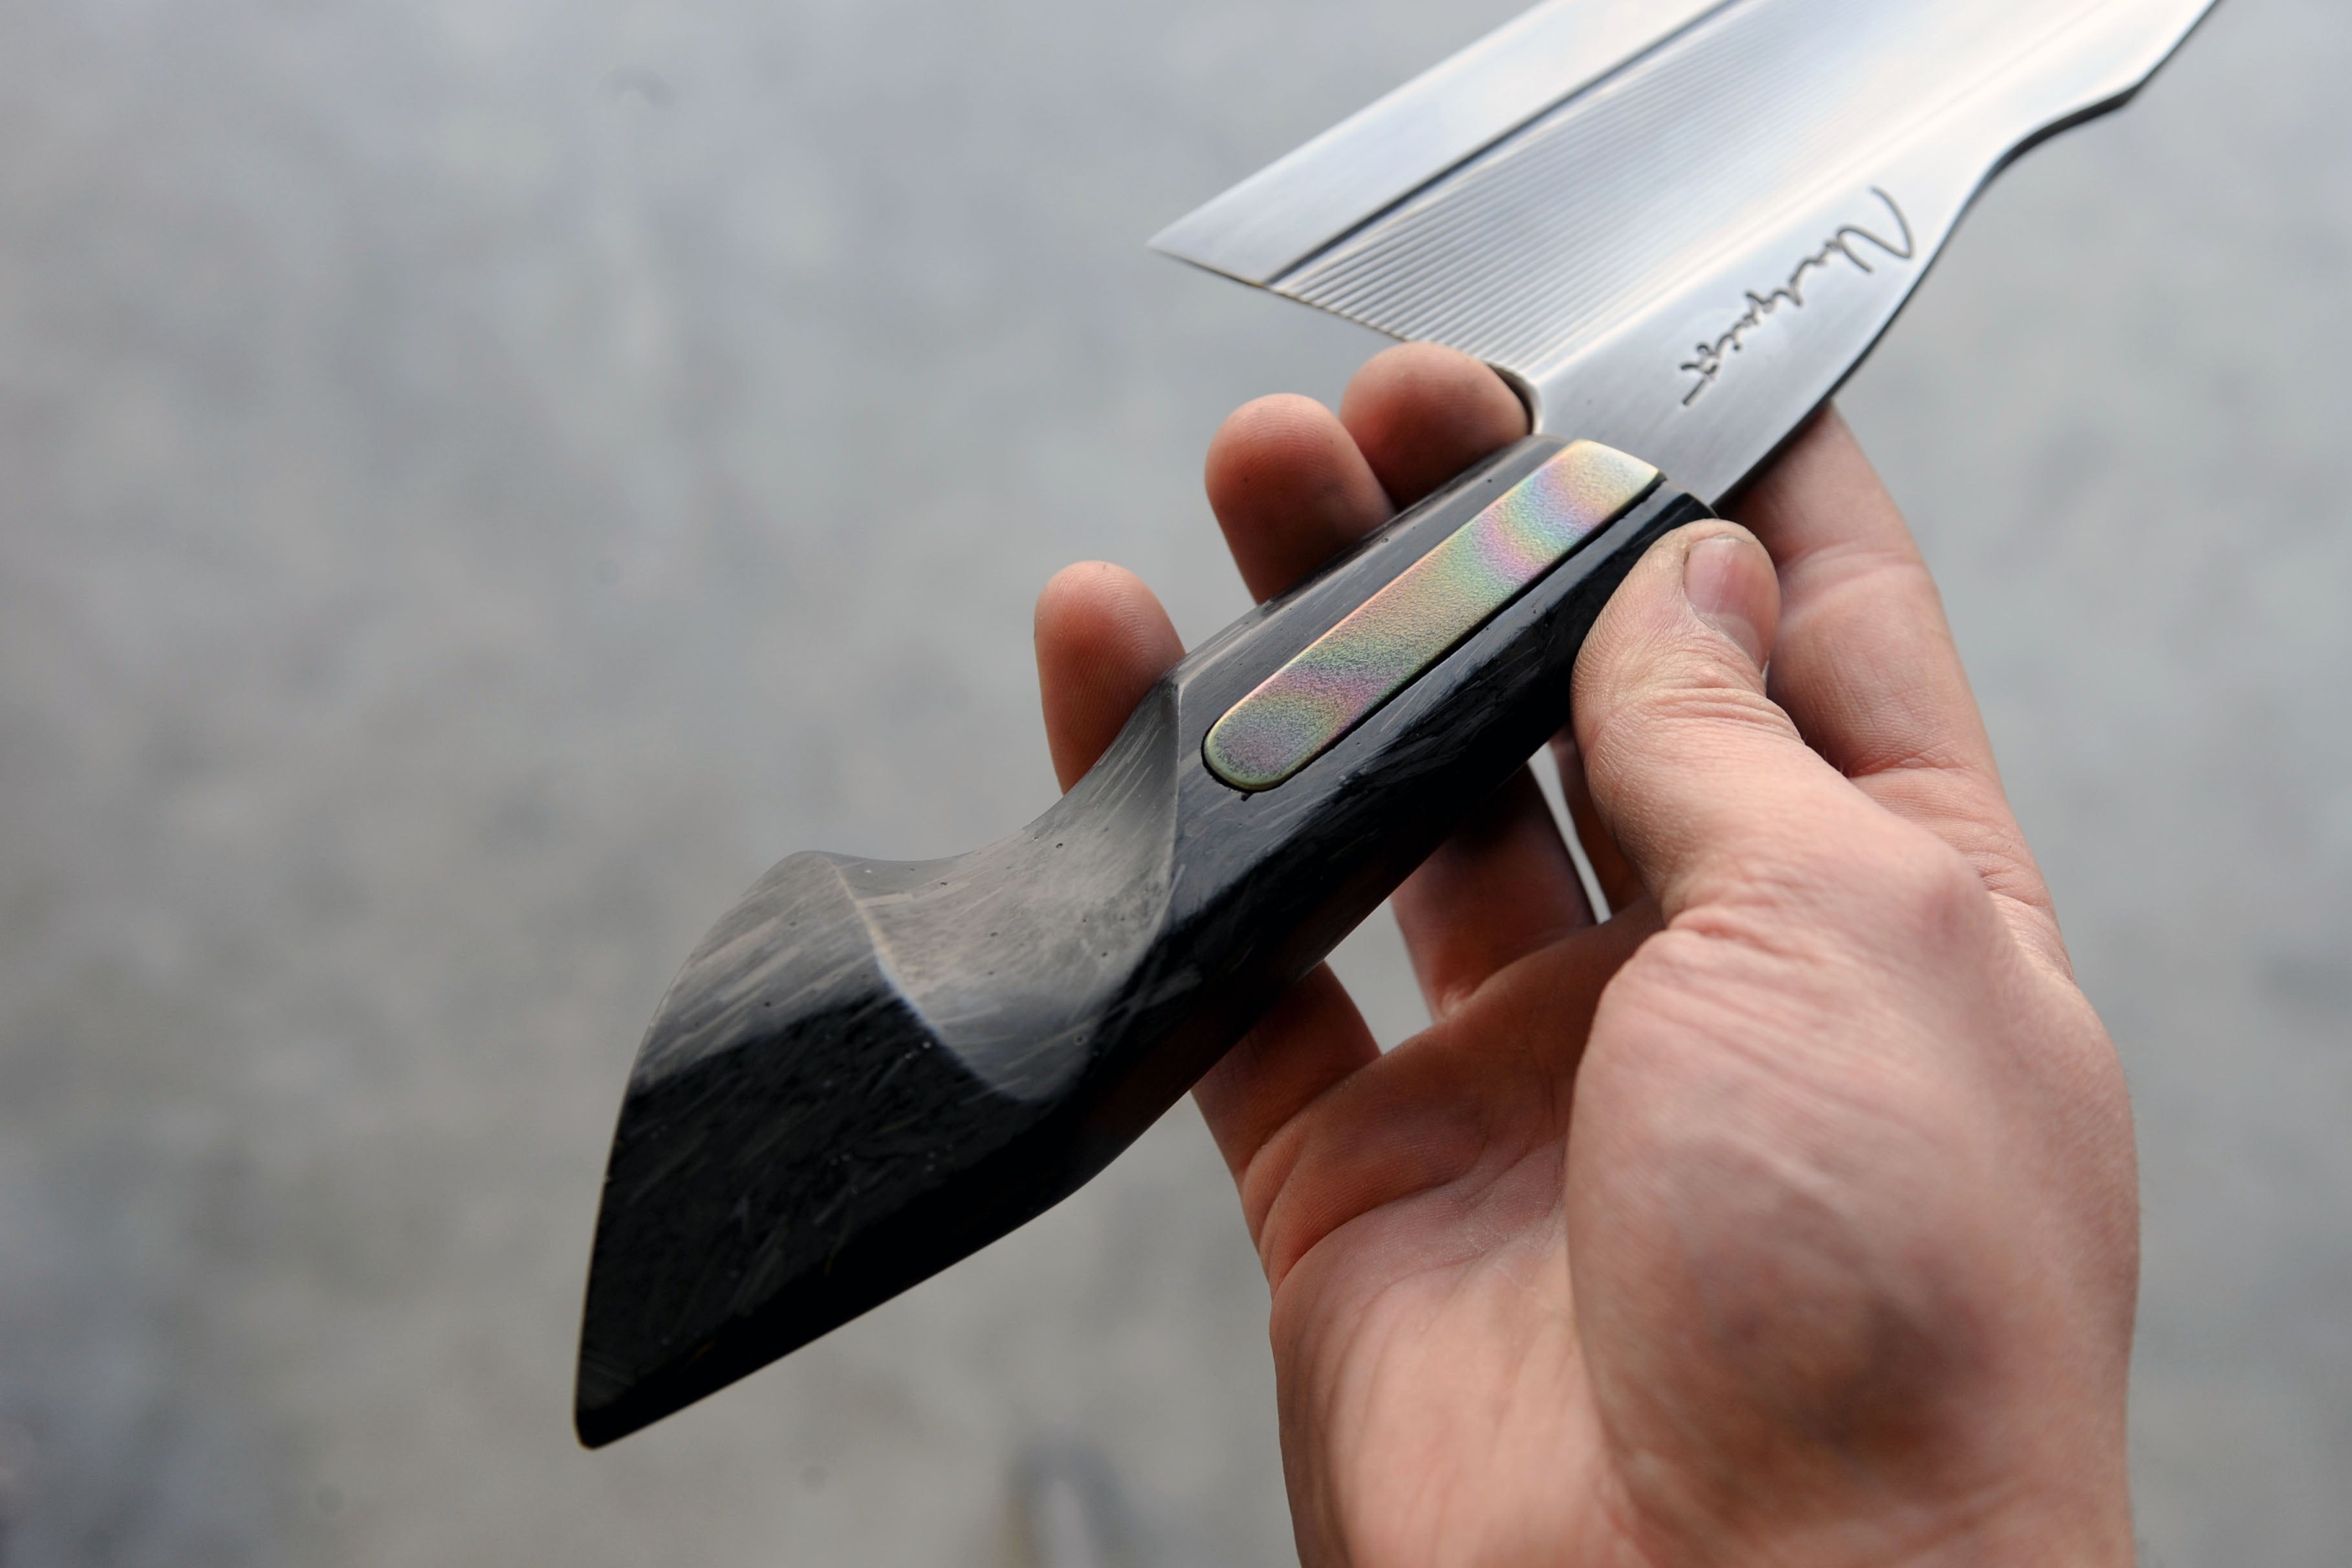 Chopped Carbon Fibre & Titanium S-Grind Chef's Knife